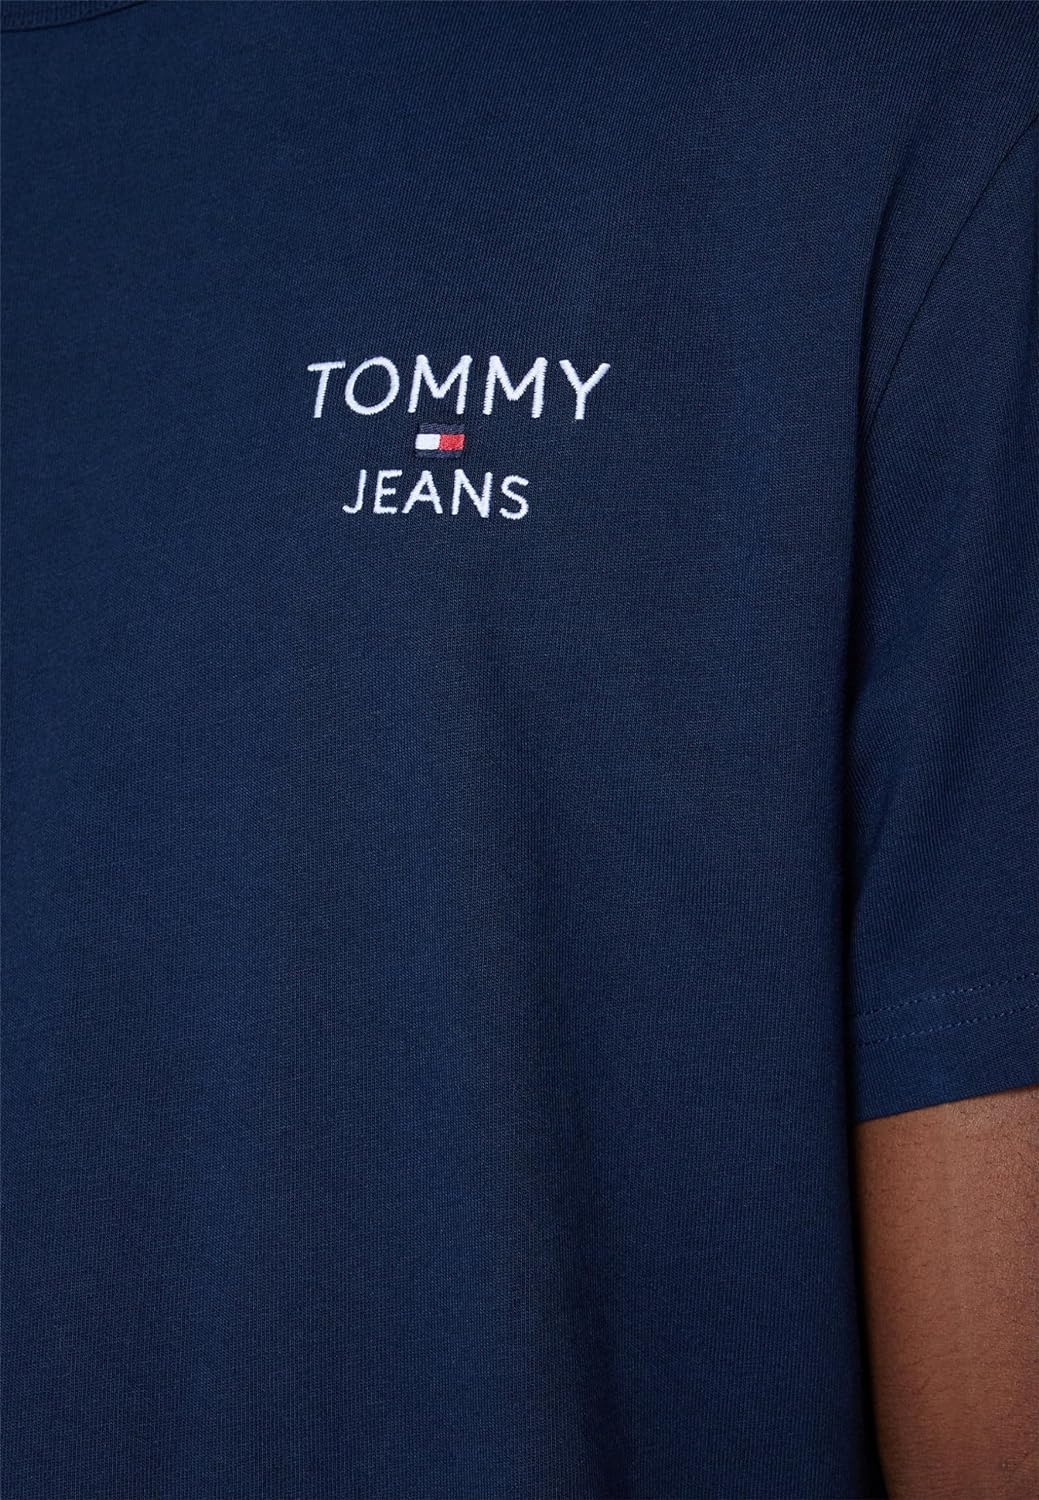 TOMMY HILFIGER Tshirt Uomo - Blu